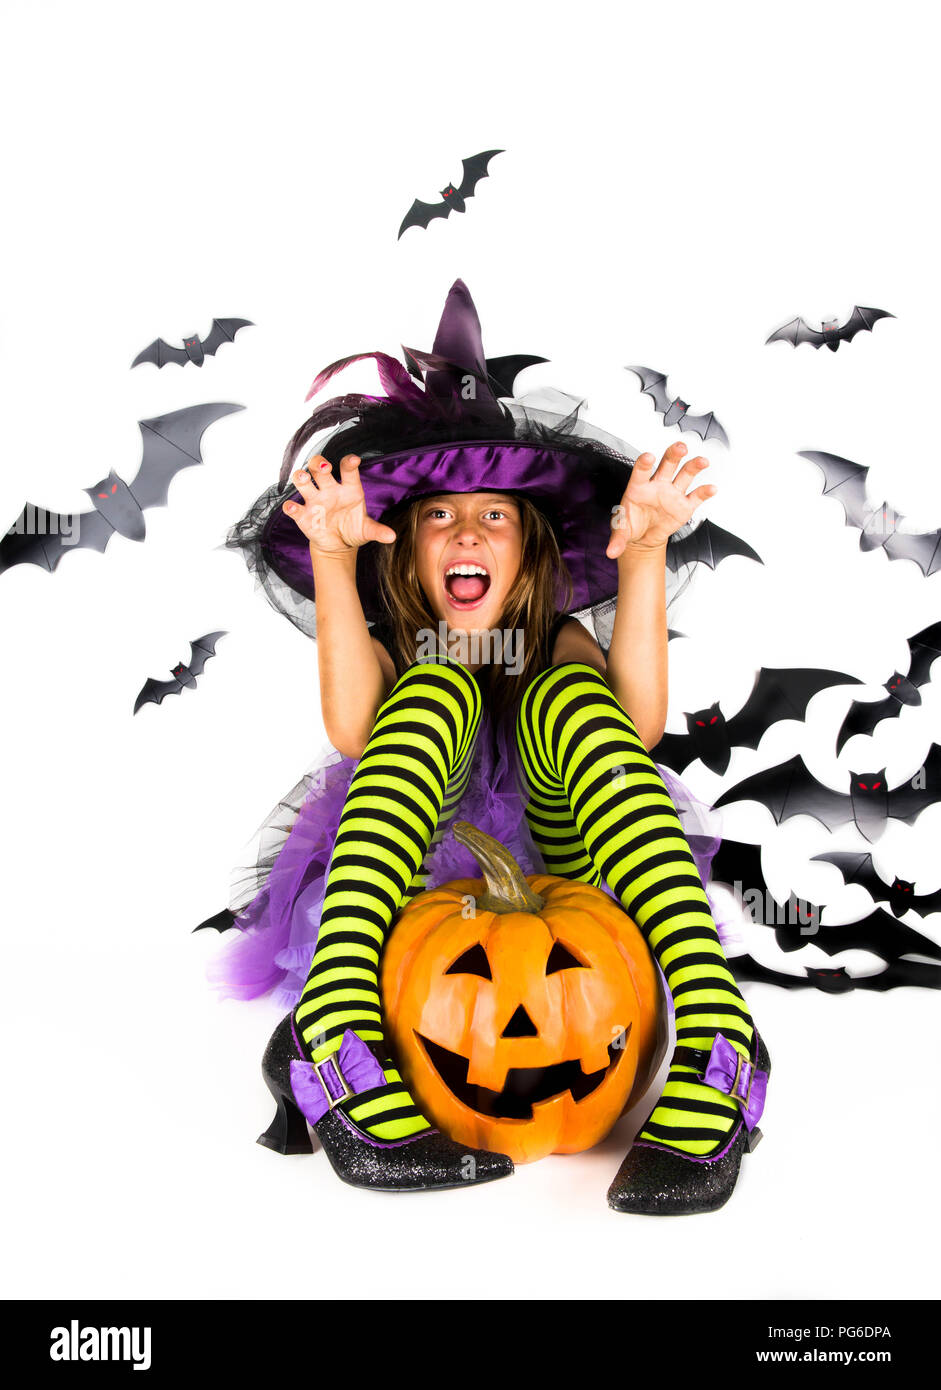 Halloween Kinder, glücklich Scary Girl gekleidet in Halloween Kostüm von  Hexe, Zauberer für Pumpkin Patch und Halloween Party Stockfotografie - Alamy